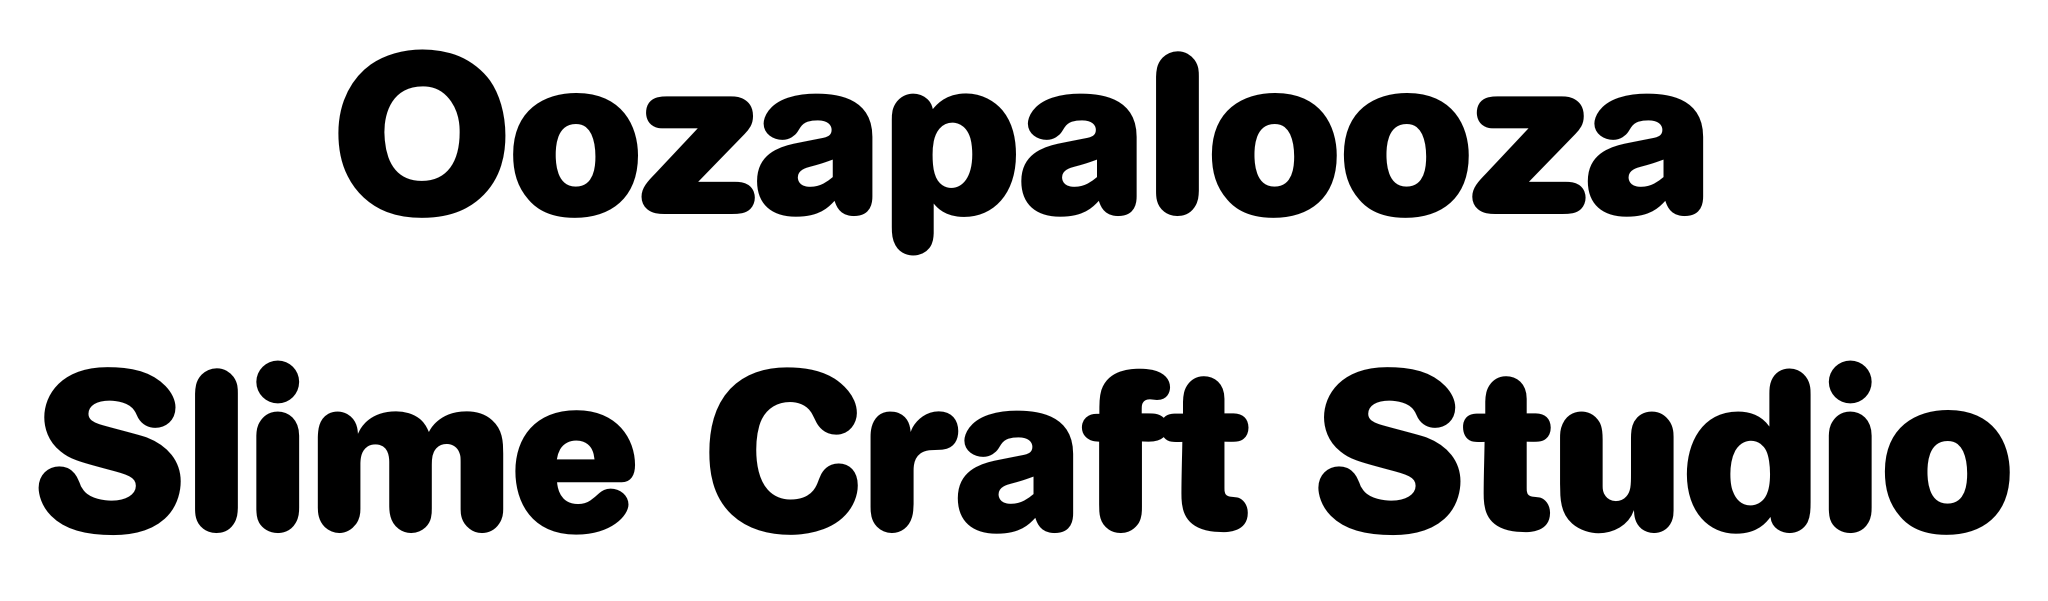 Oozapalooza Slime Craft Studio (Bronze)